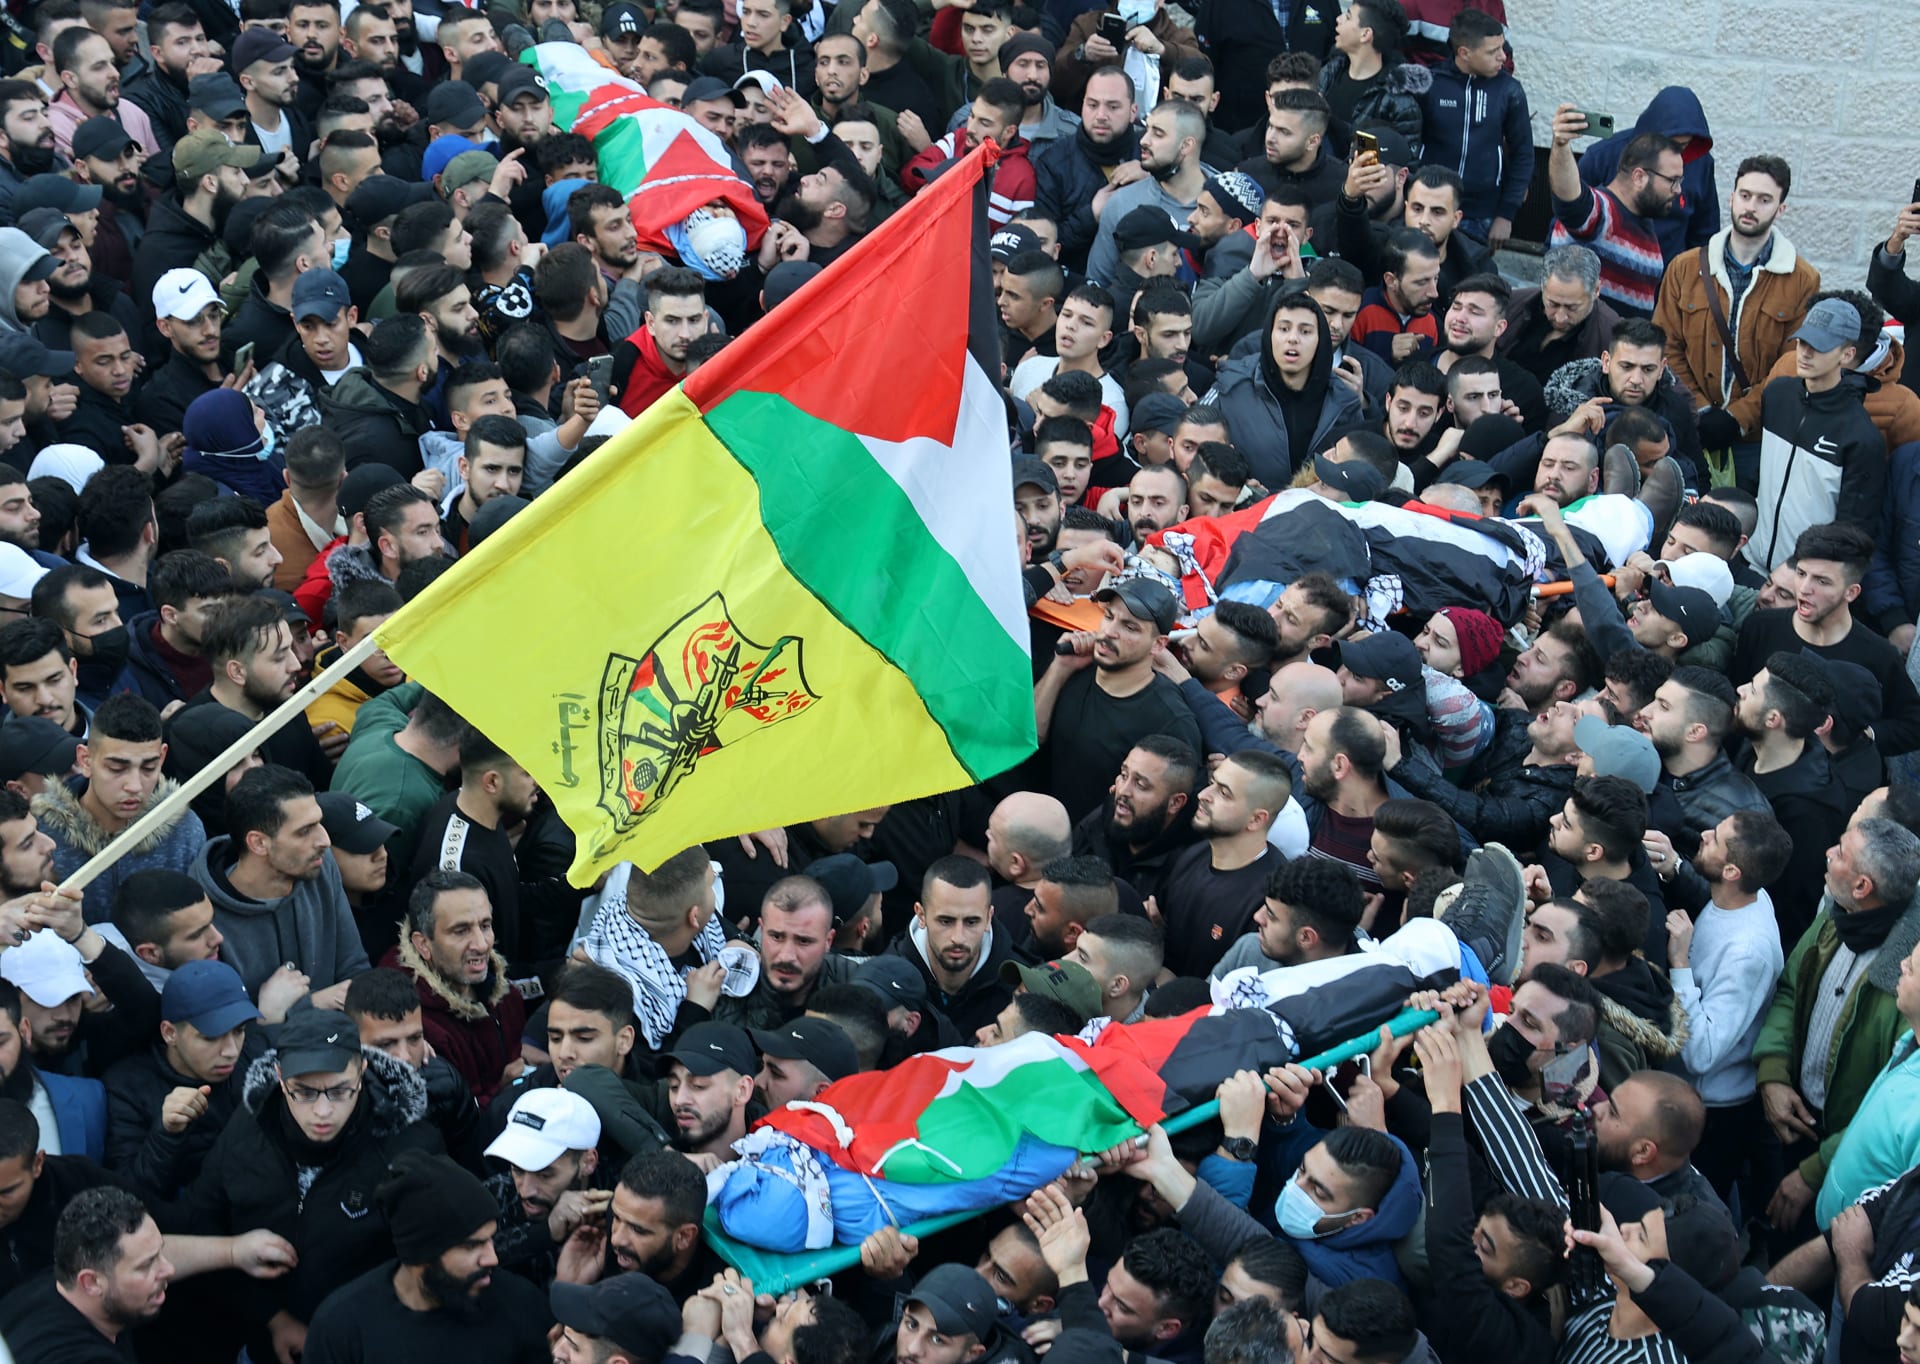 مشيعون يحضرون جنازة ثلاثة فلسطينيين قتلوا برصاص القوات الإسرائيلية خلال مداهمة ما وصفته إسرائيل بـ "خلية إرهابية"، في 8 فبراير 2022 في مدينة نابلس بالضفة الغربية.